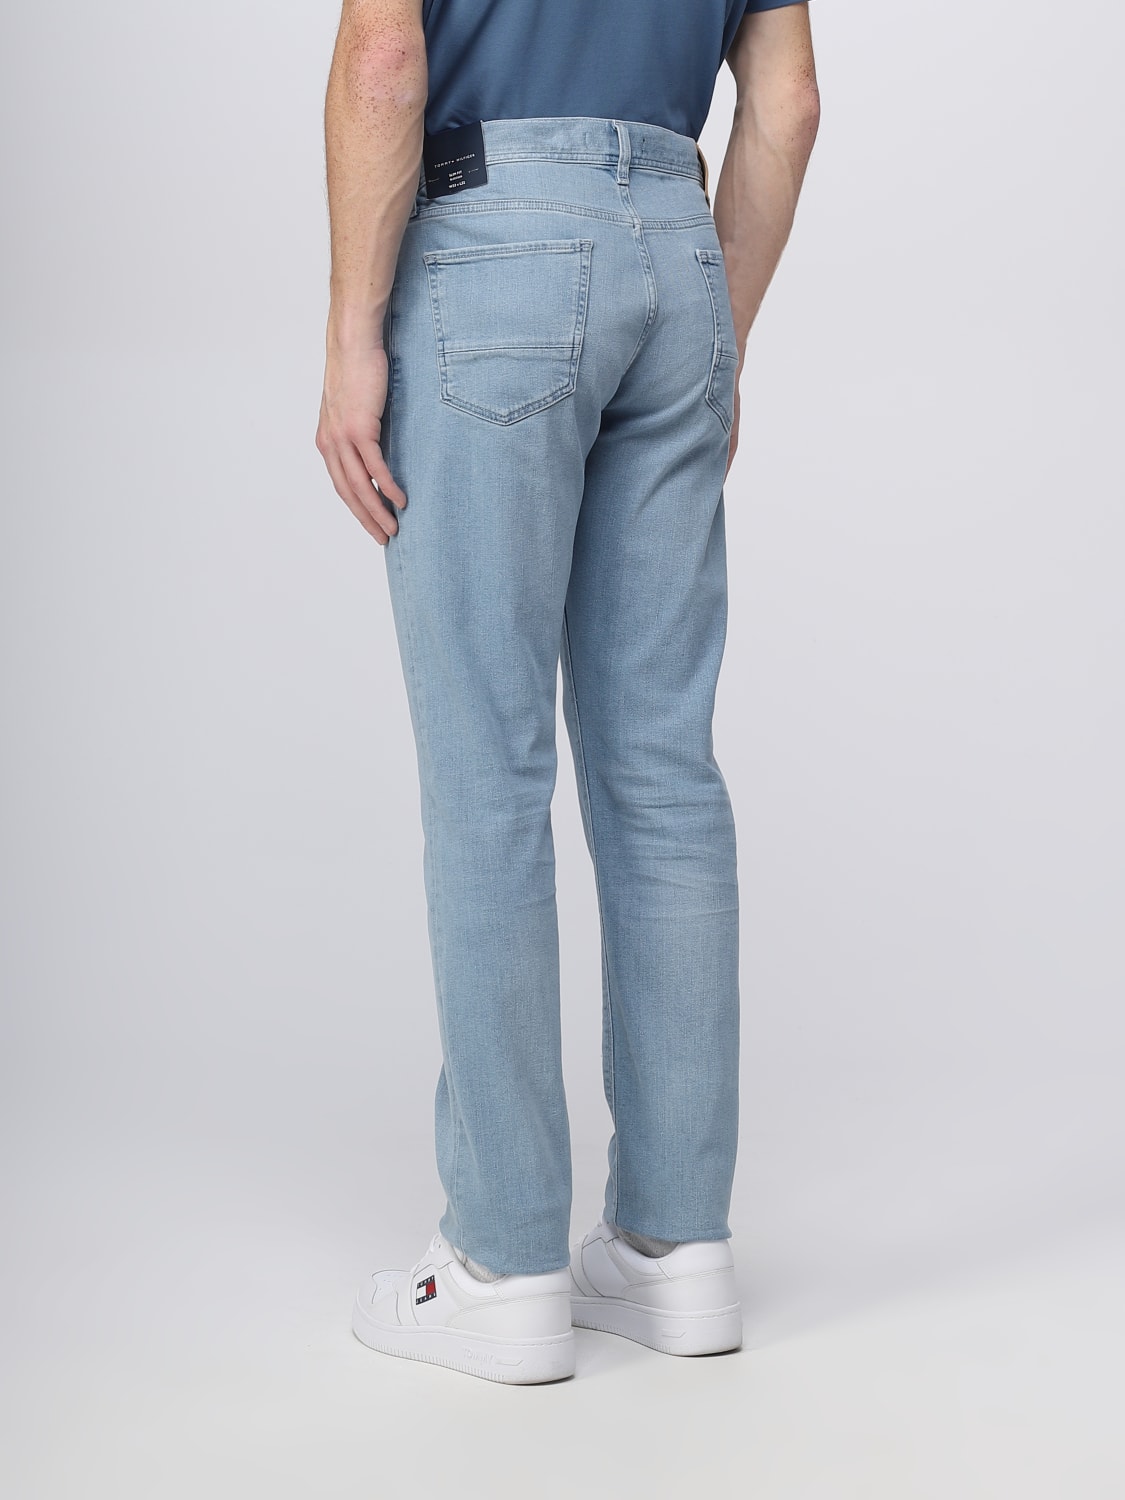 TOMMY HILFIGER: jeans for man - Denim | Tommy Hilfiger jeans online on